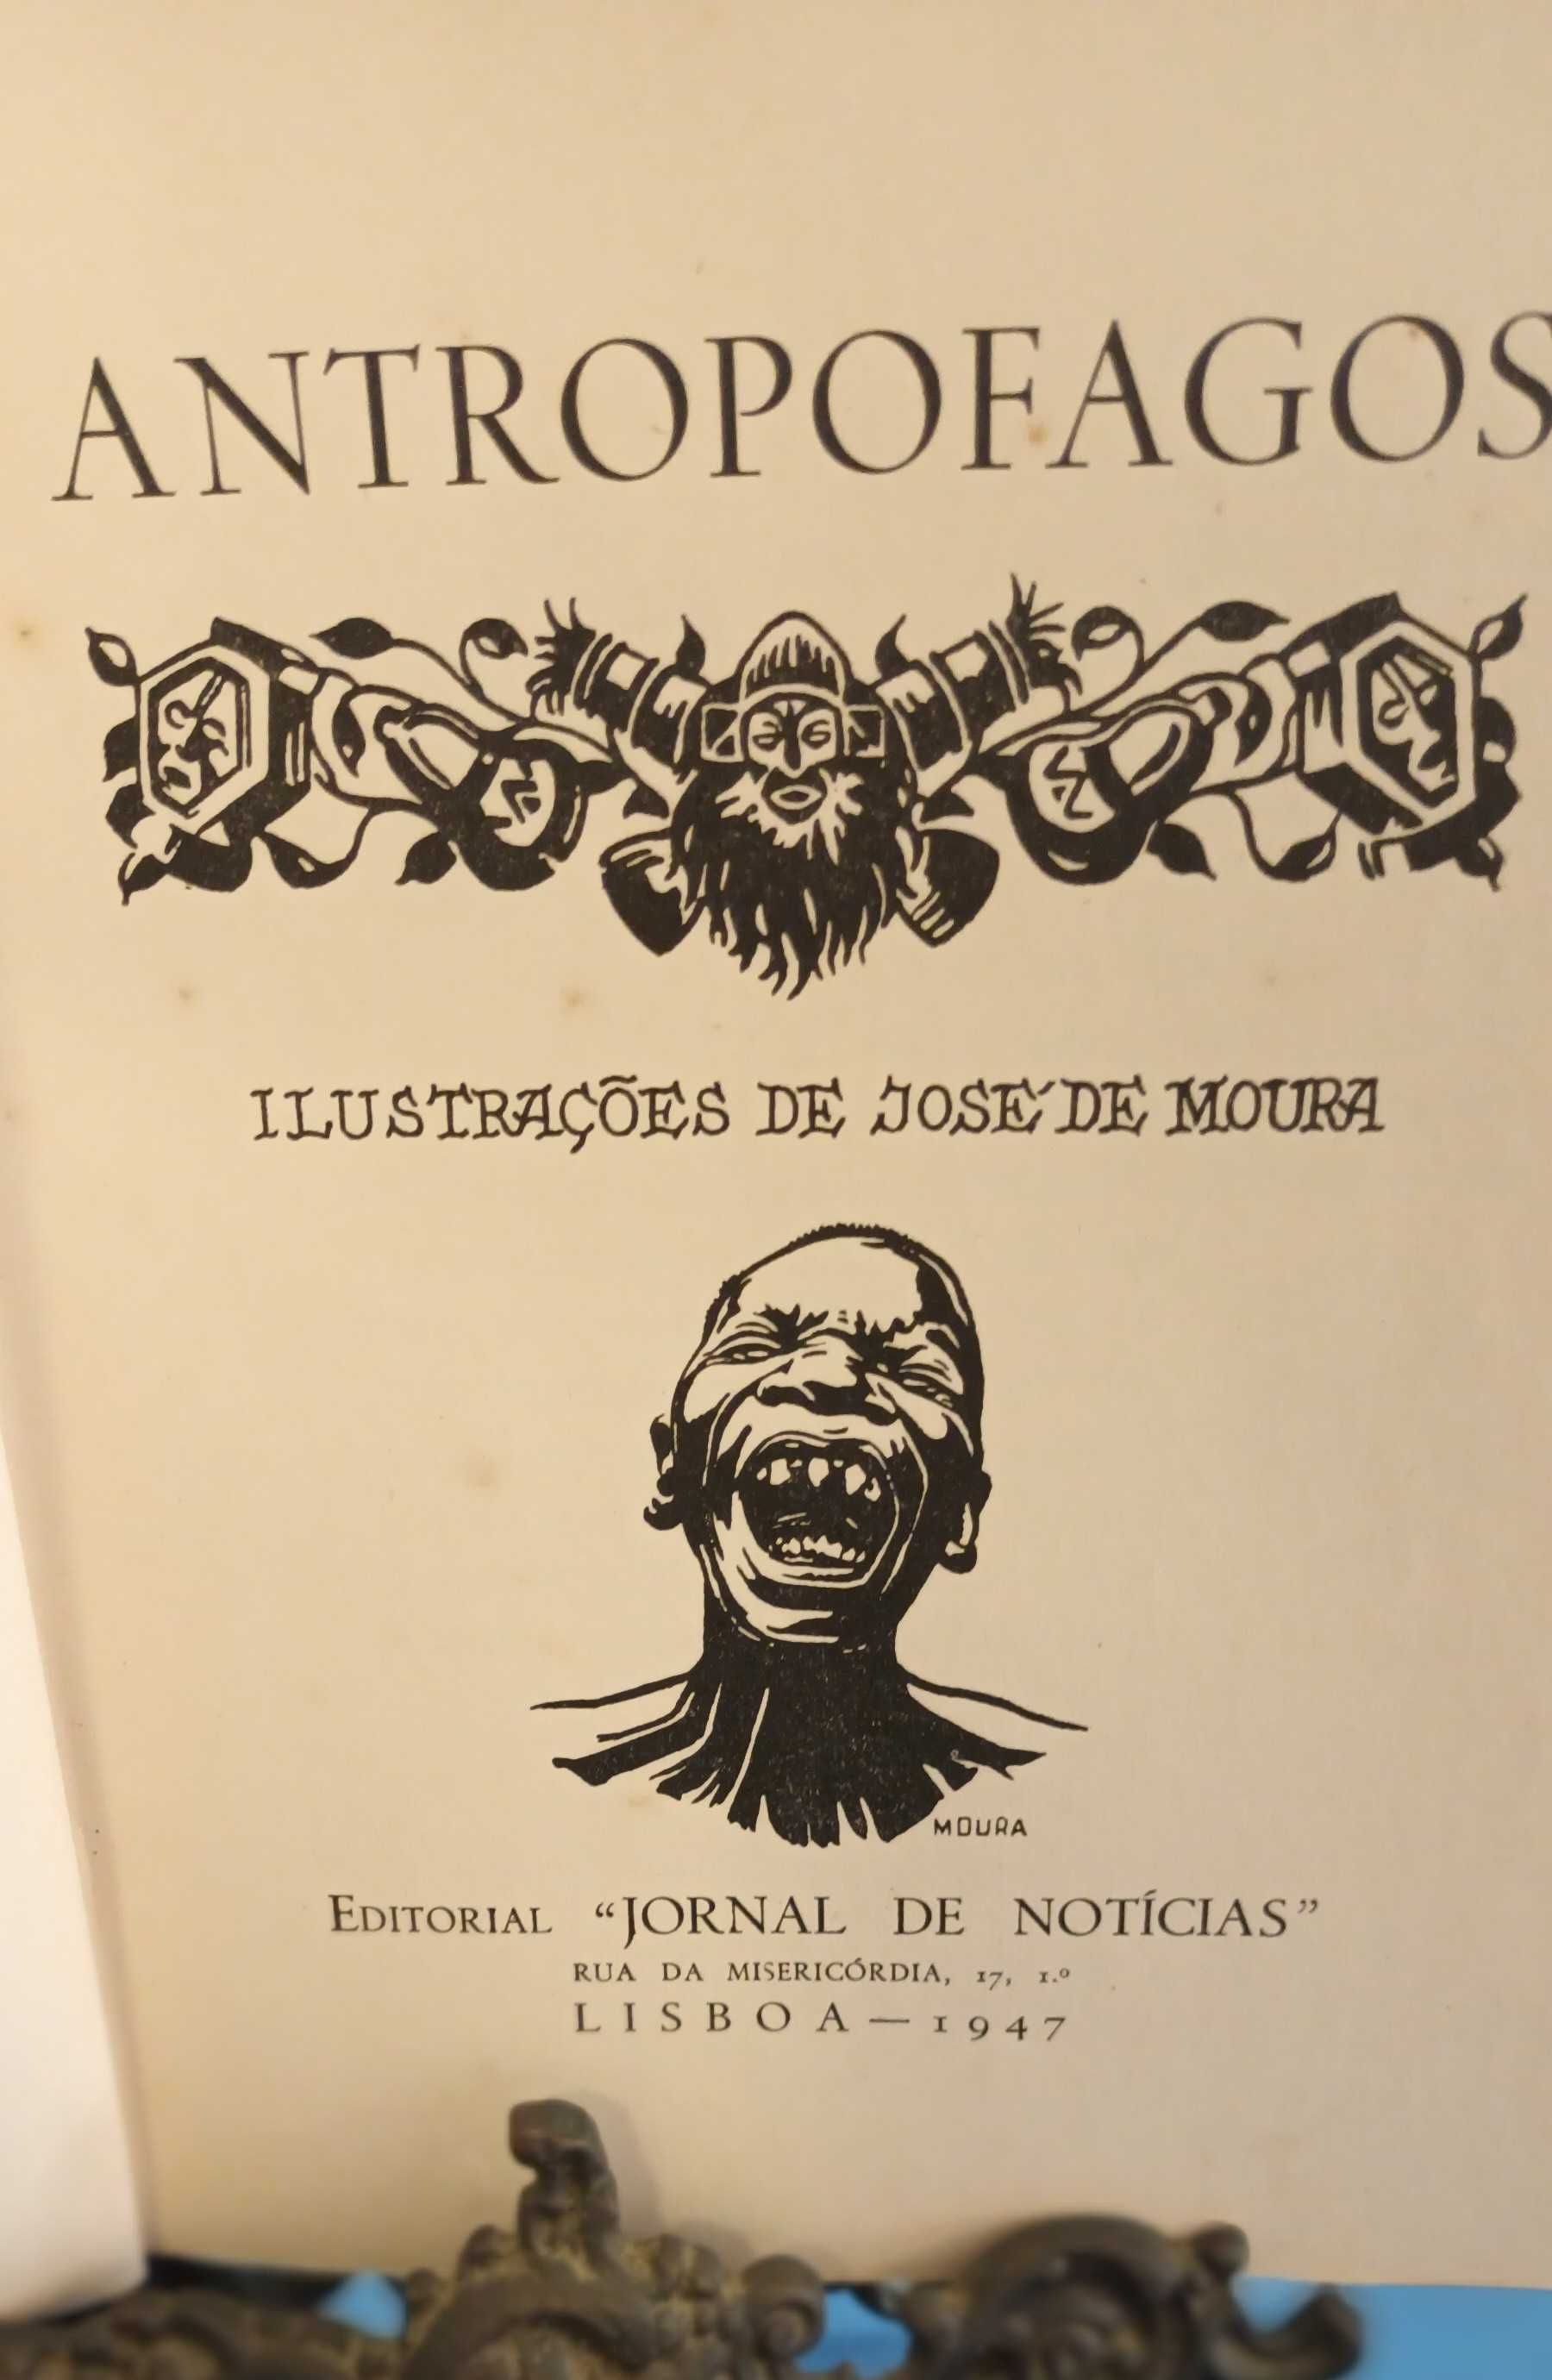 Antropofagos, Henrique Galvão, 1947